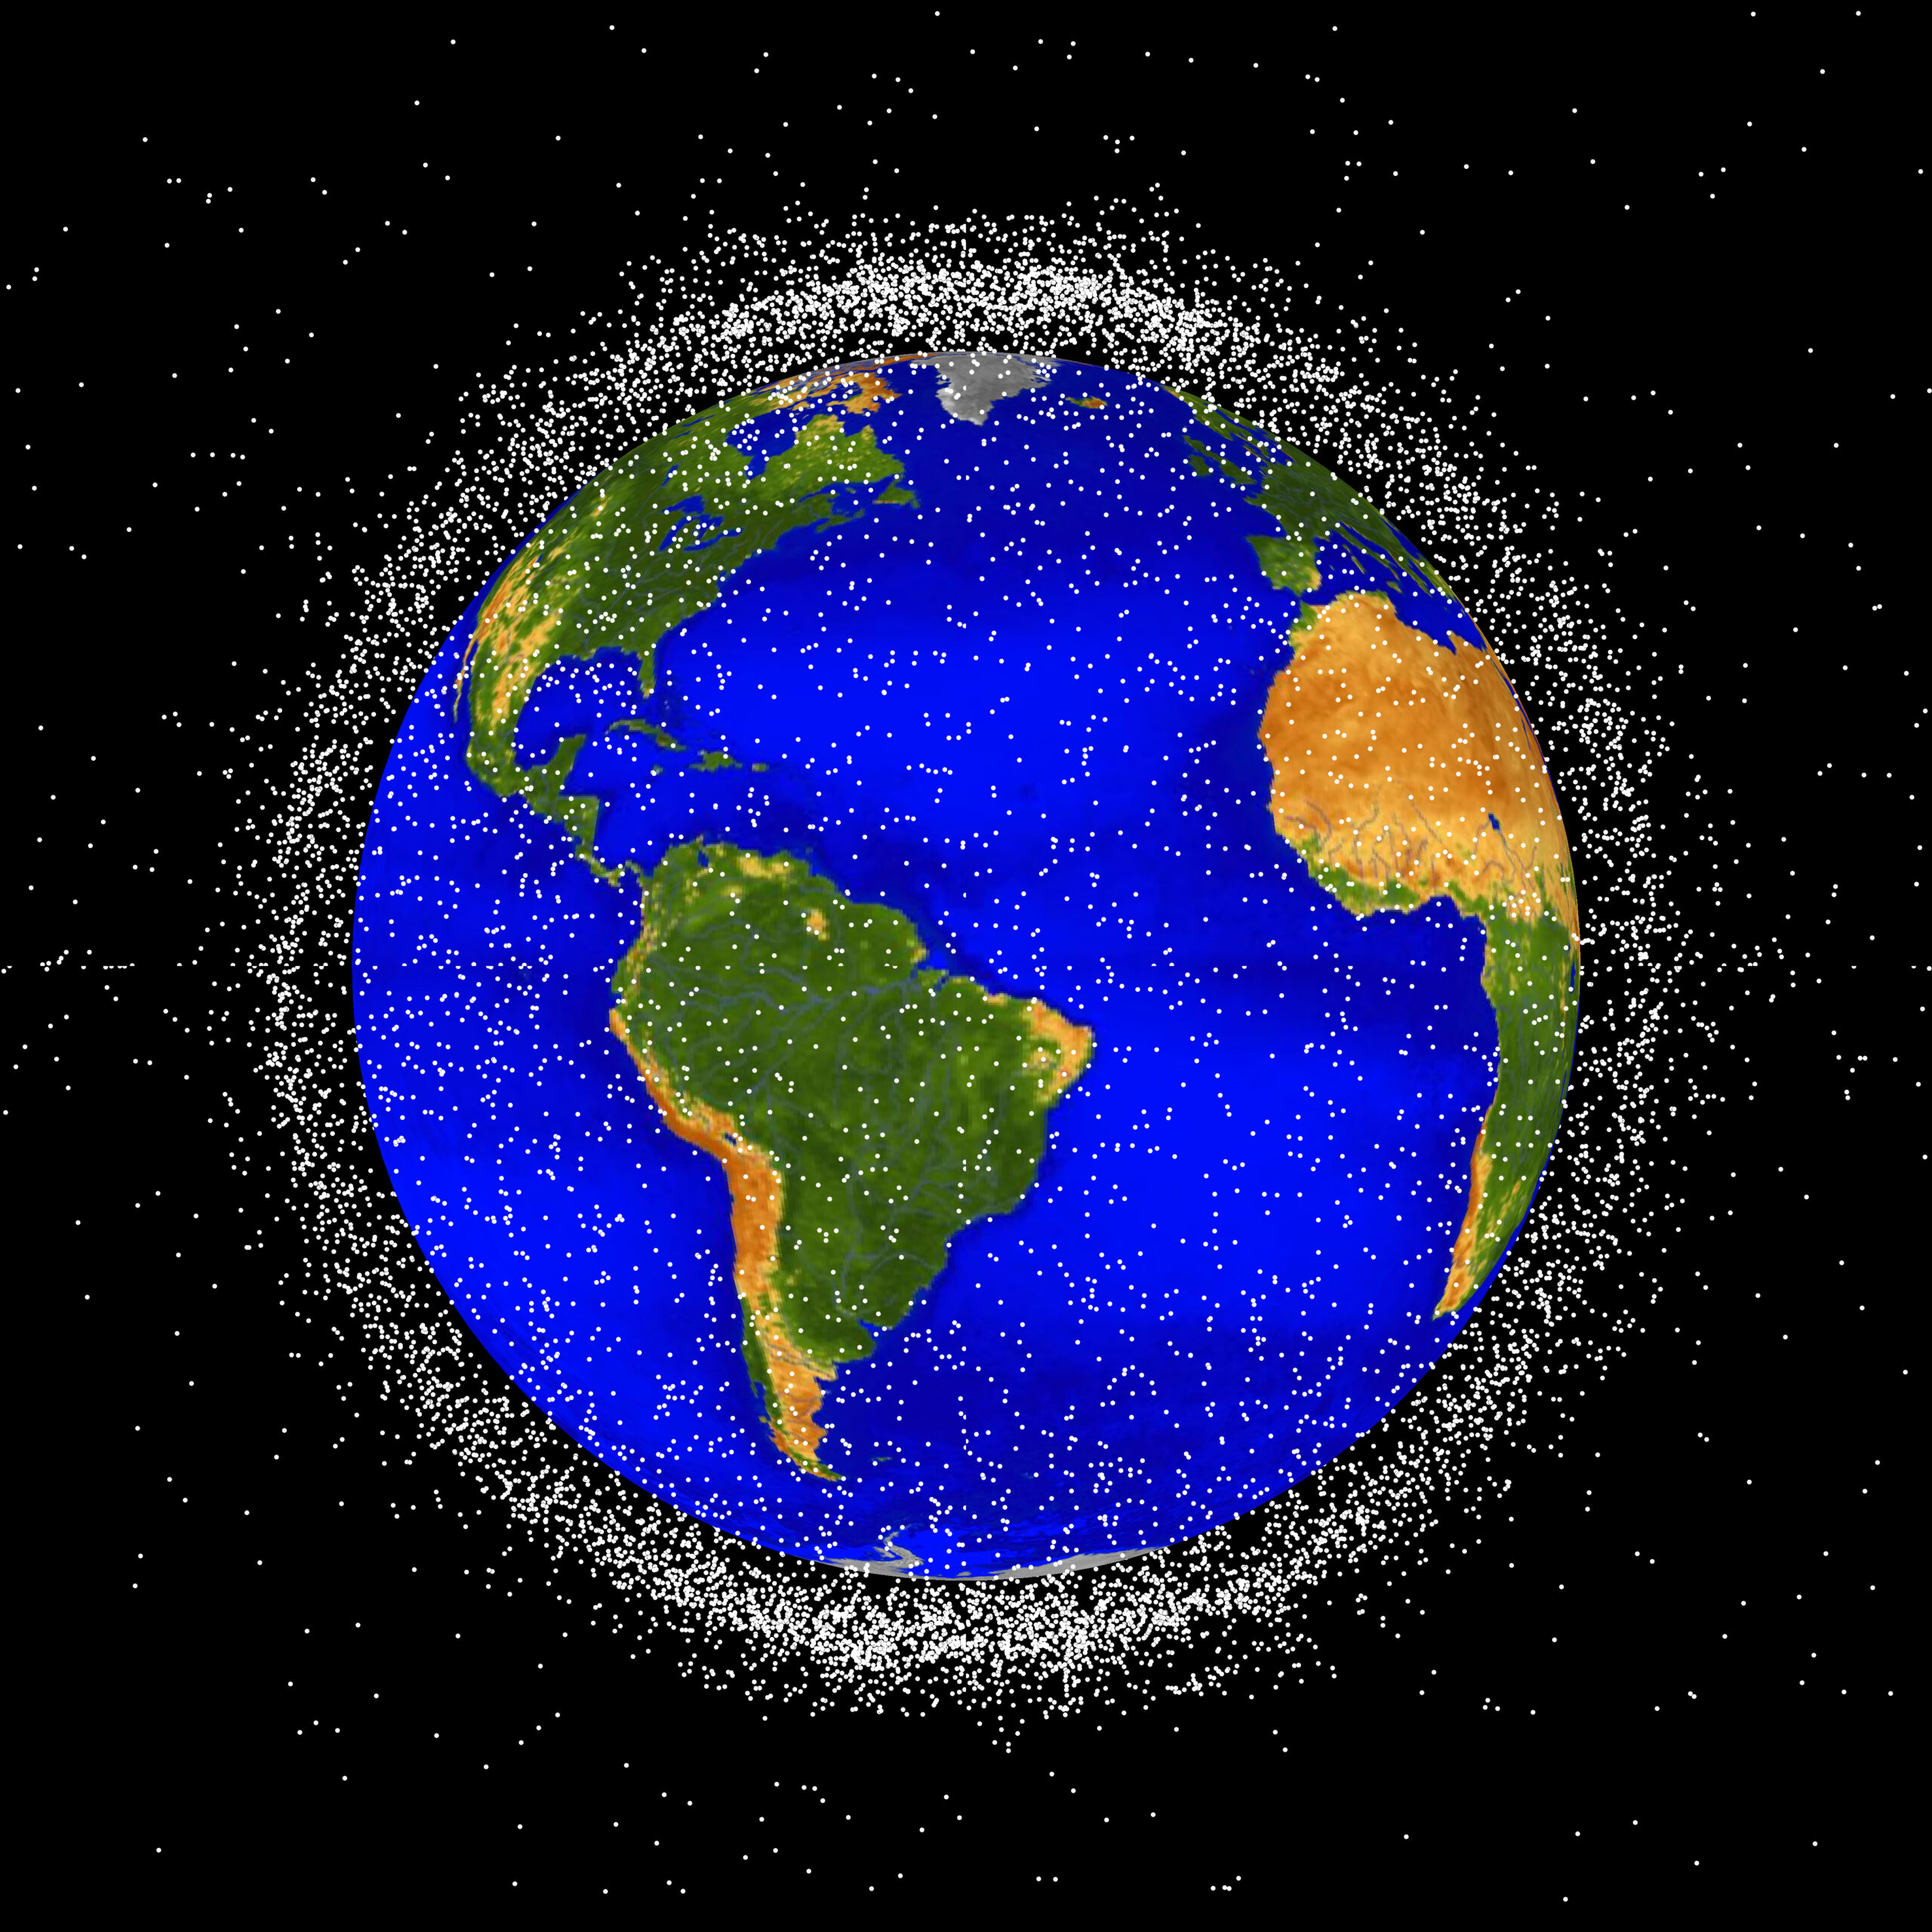 Ilustração do planeta Terra e do espaço sideral com pontos brancos em sua órbita. Crédito: NASA ODPO